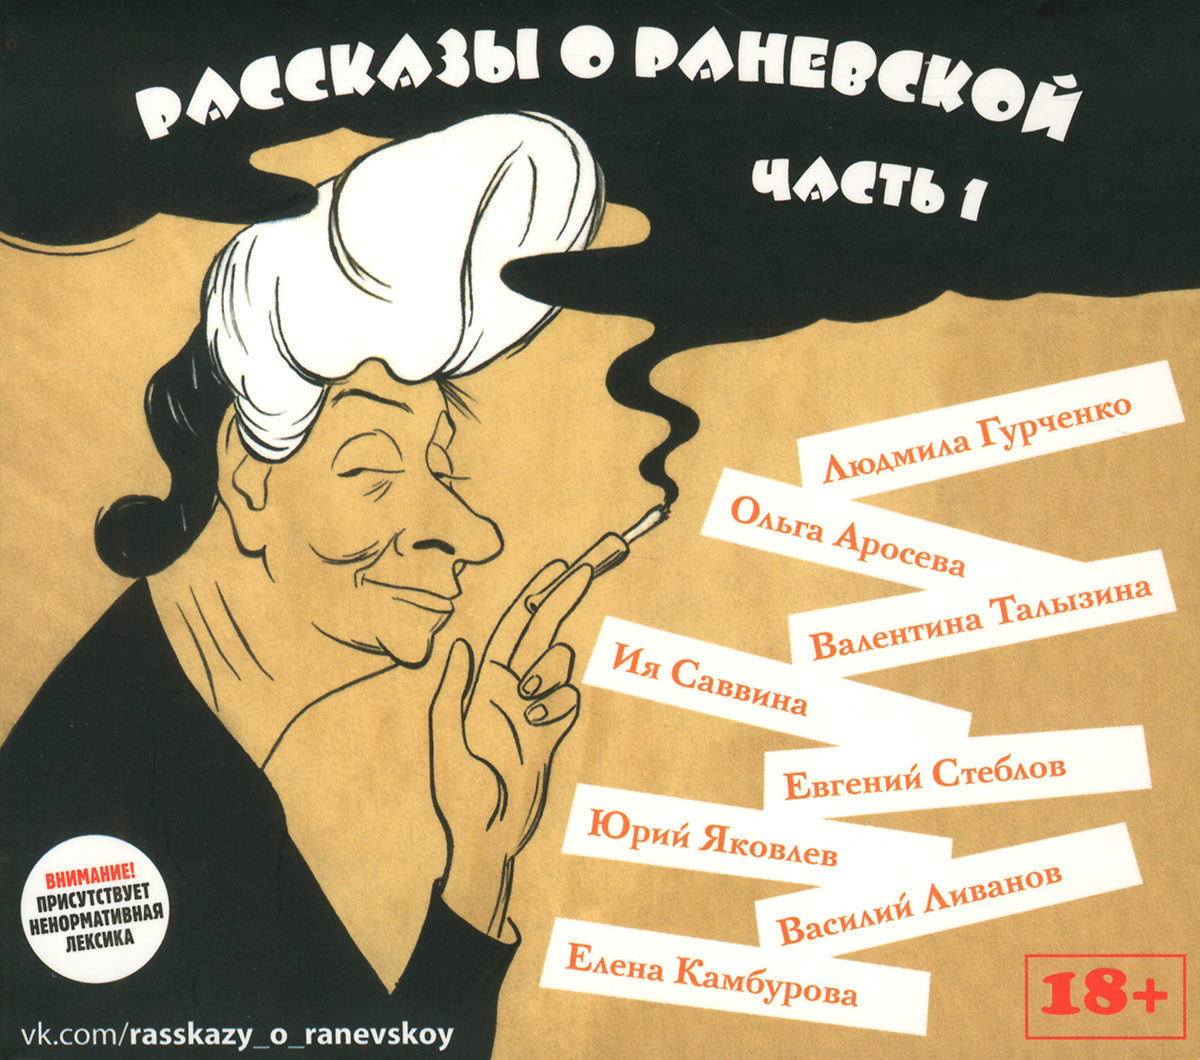 Рассказы о Раневской. Часть 1 (аудиокнига CD)